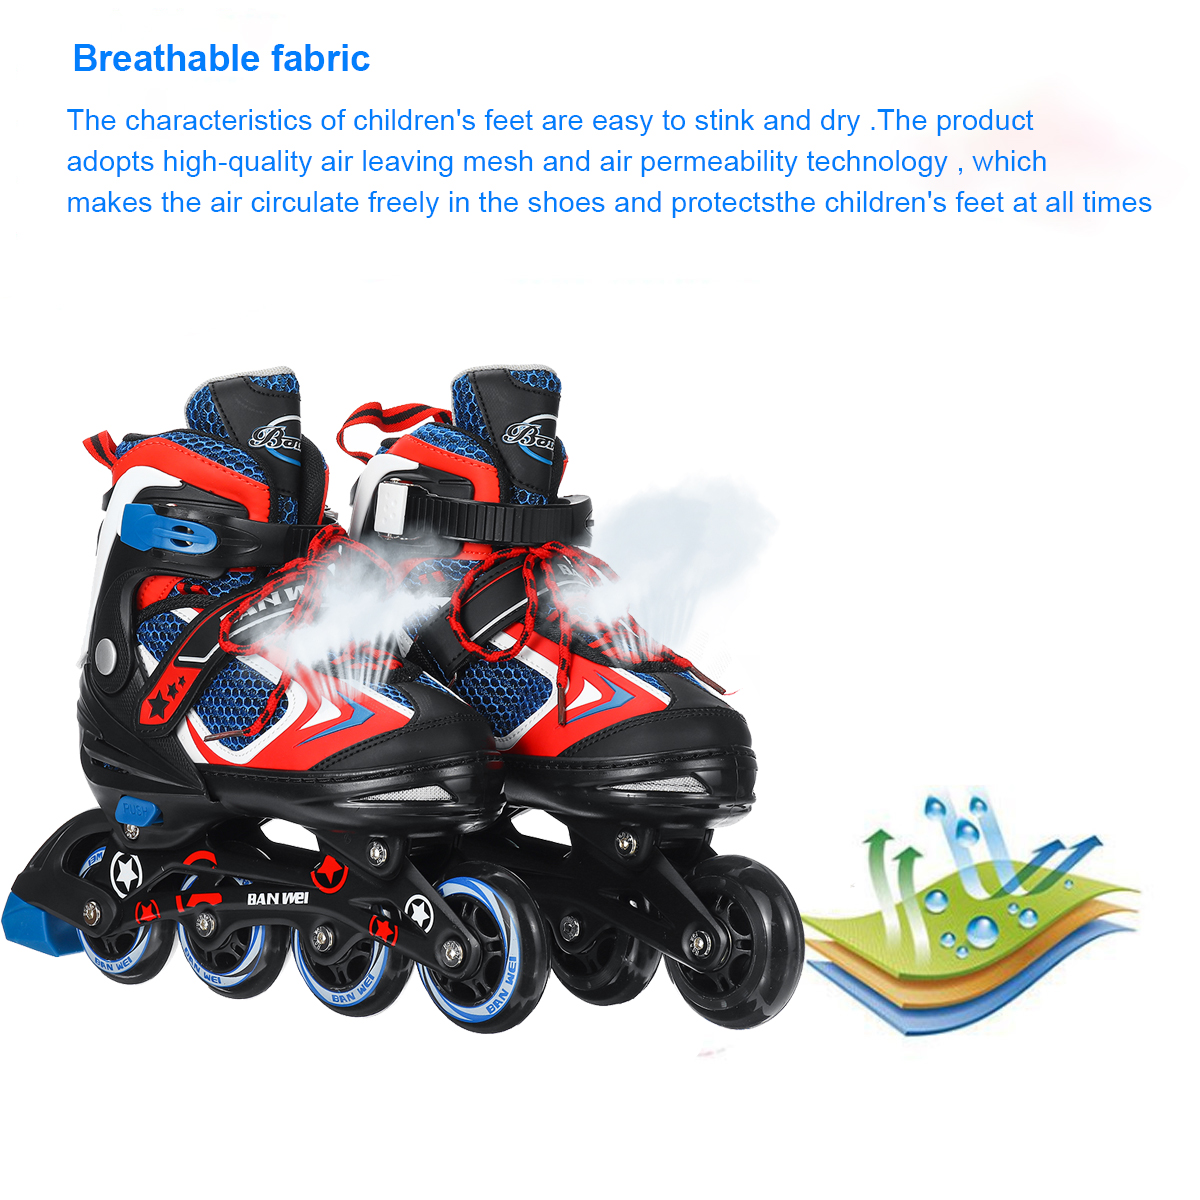 Kids-Inline-Skates-Size-Adjustable-Rollerblades-Teens-Skate-Shoes-Roller-Skates-For-Boys-Girls-1819672-3